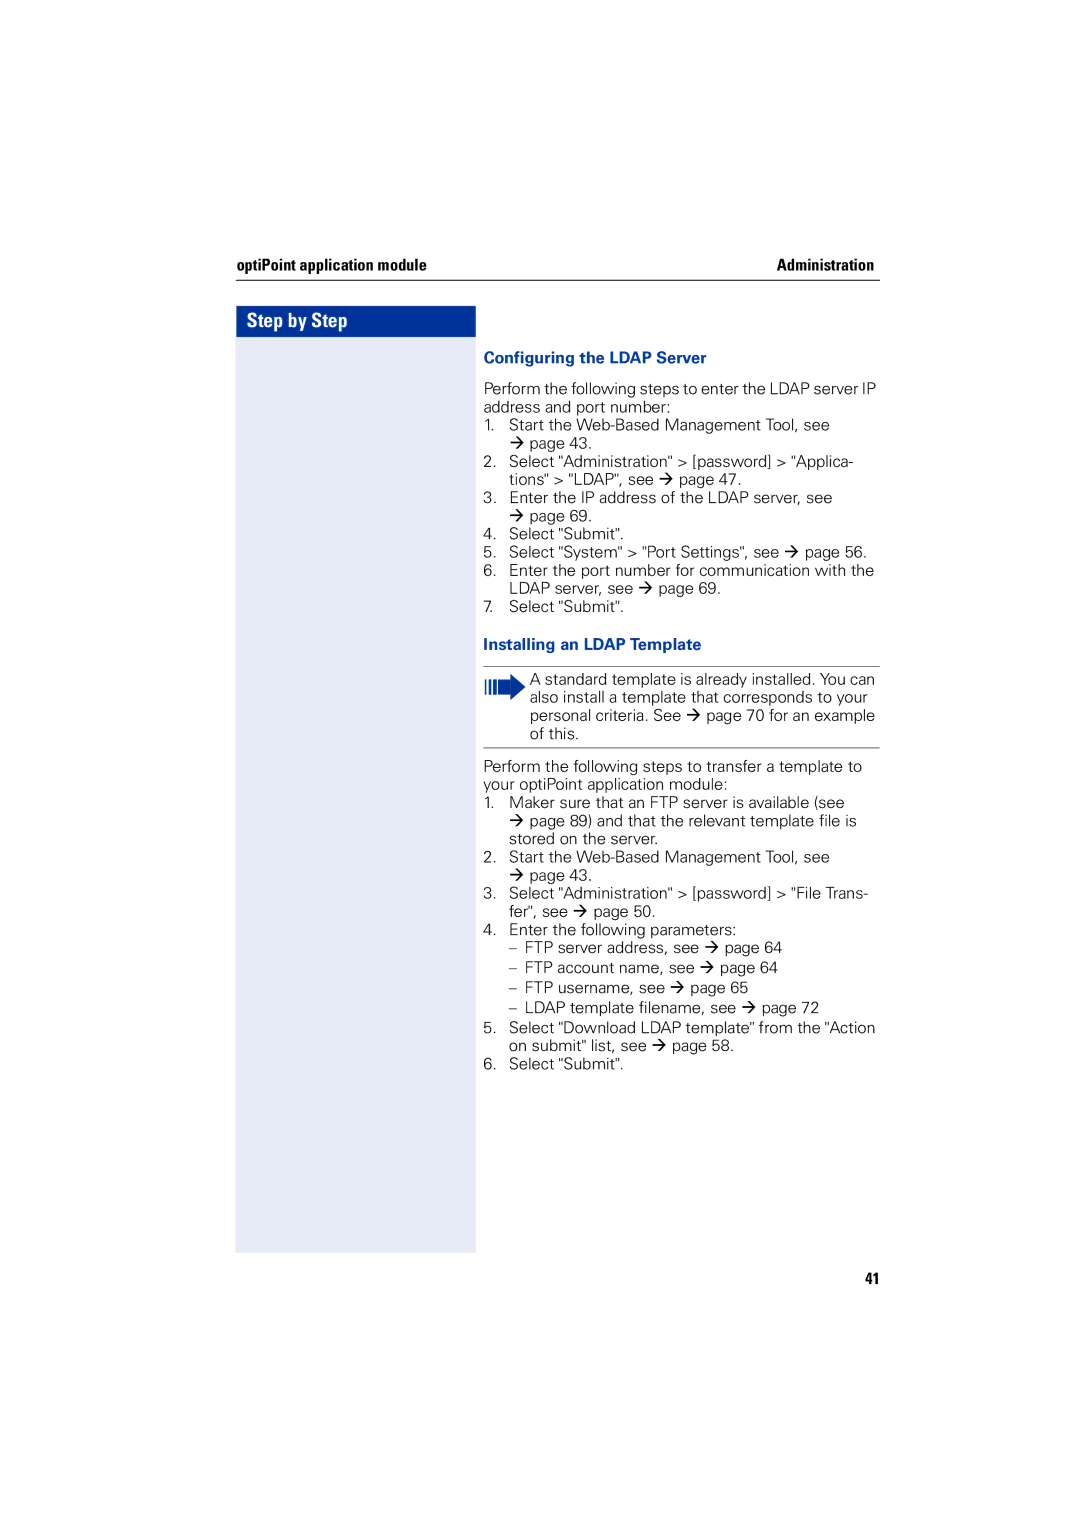 Siemens 2000 manual OptiPoint application module, Installing an Ldap Template 